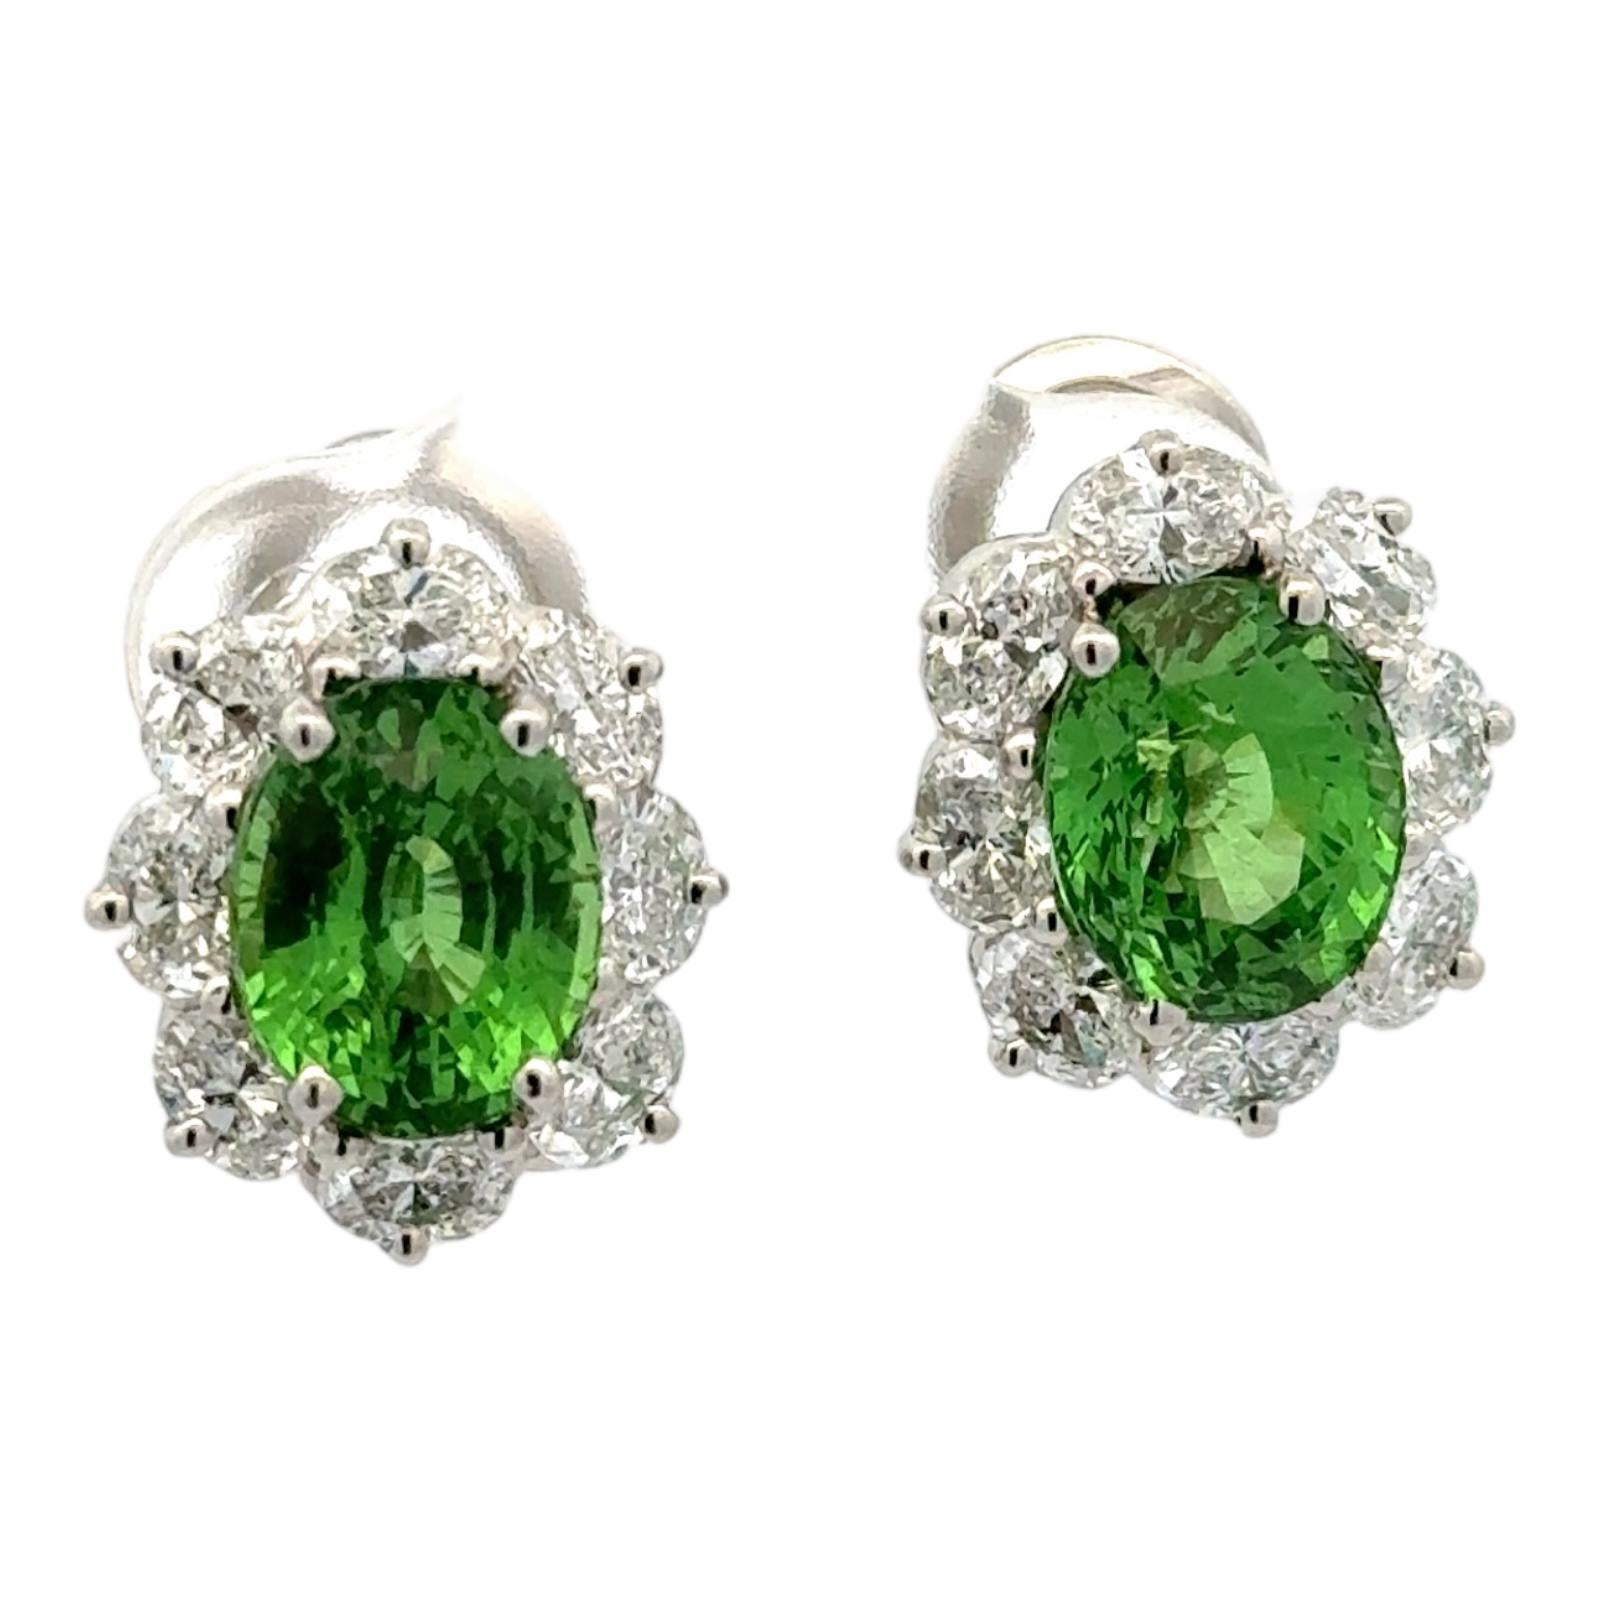 Women's Oscar Heyman Tsavorite Diamond Estate Lever-Back Earrings Certified